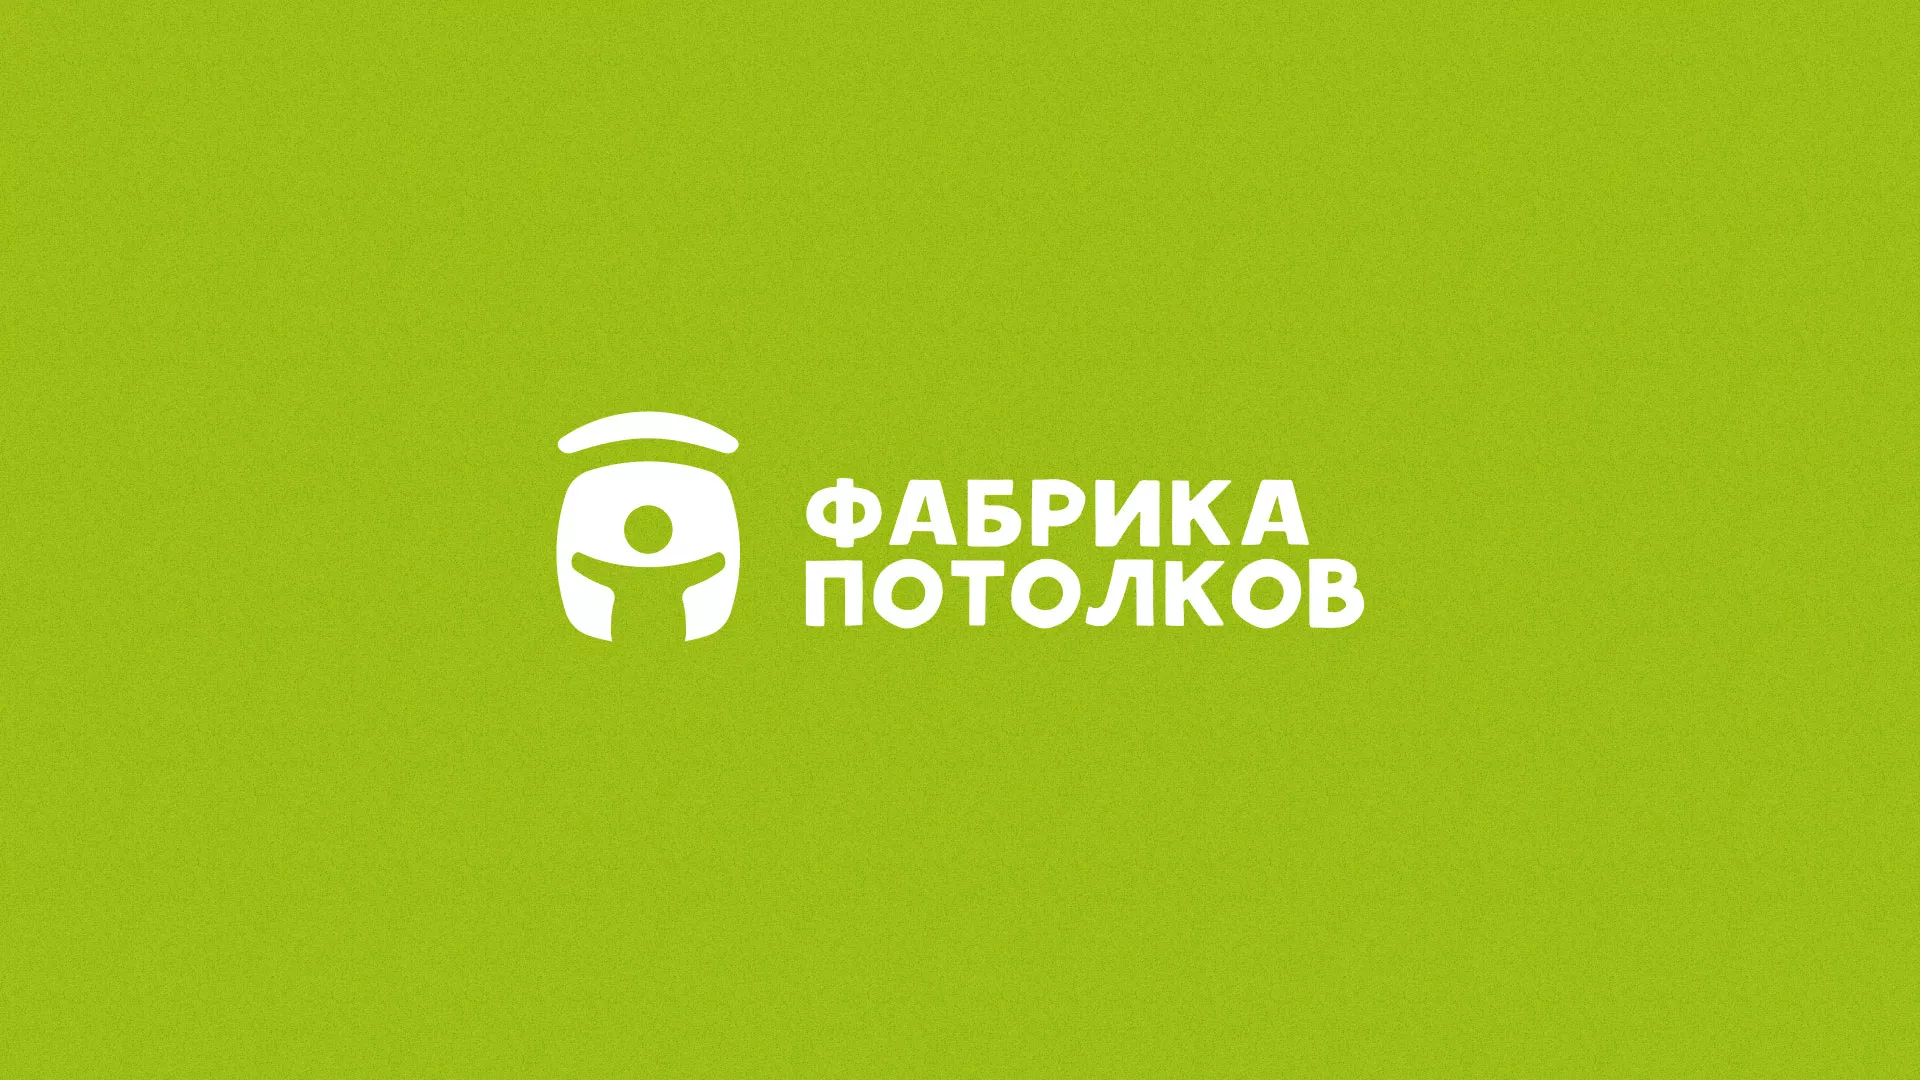 Разработка логотипа для производства натяжных потолков в Гагарине